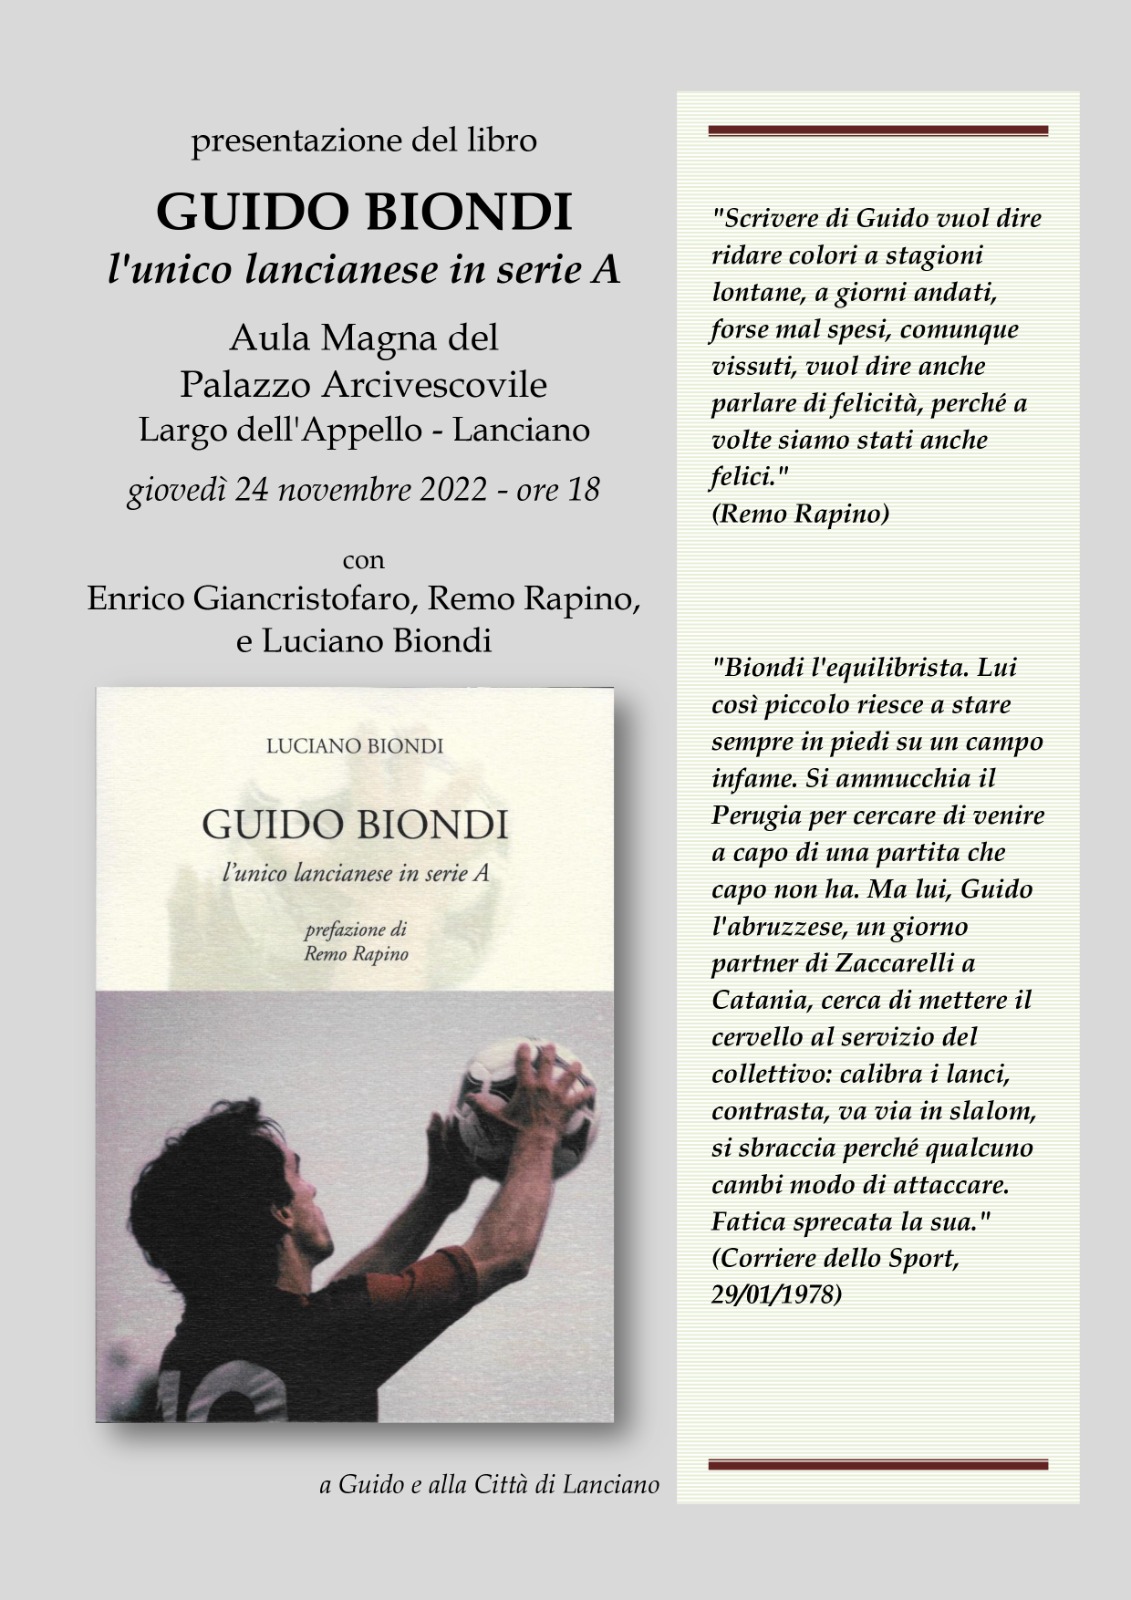 Lanciano, domani la presentazione del libro "Guido Biondi l'unico lancianese in sere A" di Luciano Biondi